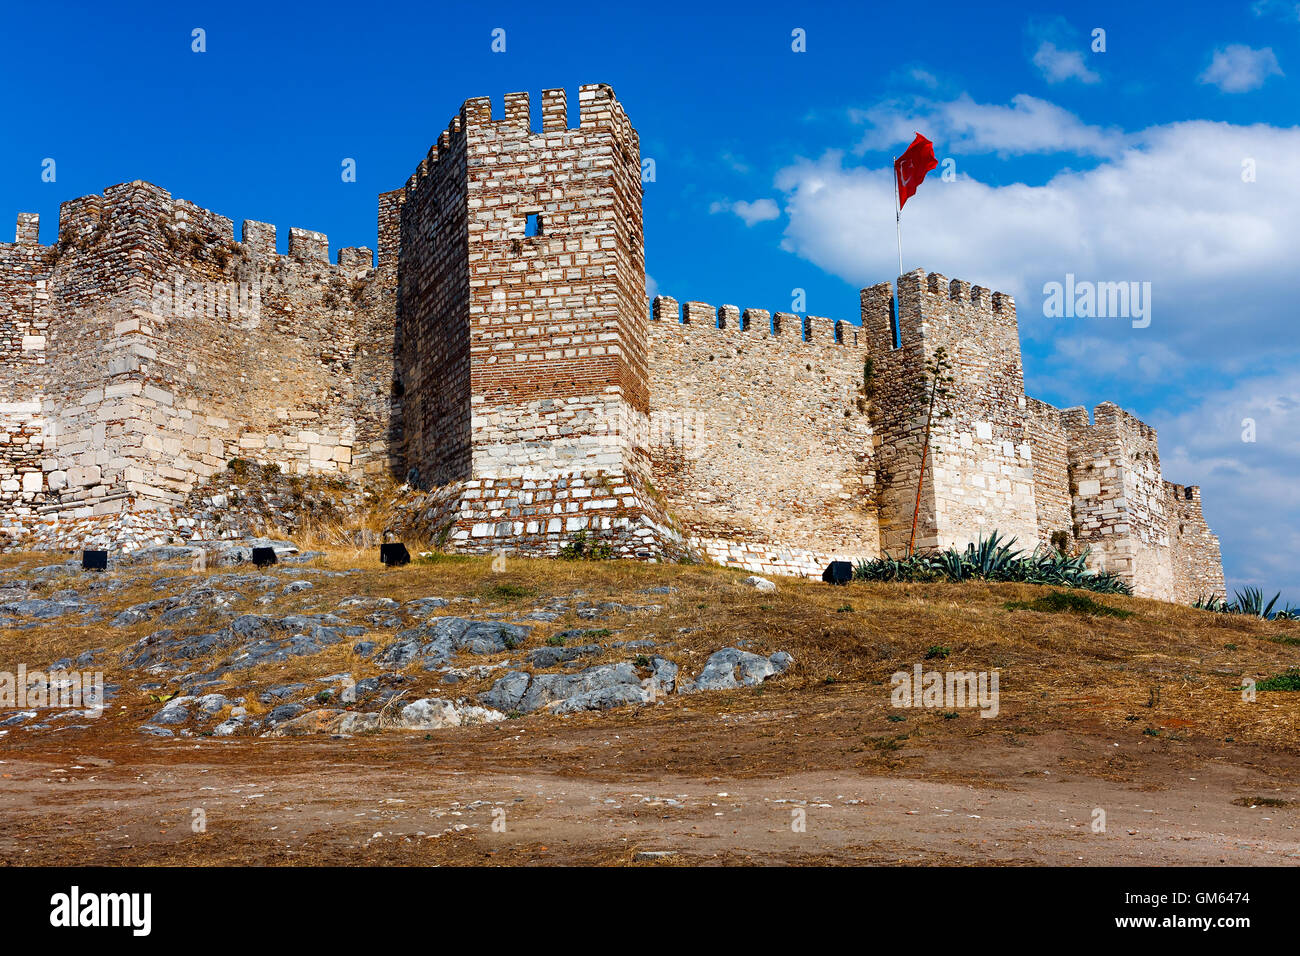 Ayasoluk Castle in Turkey Stock Photo